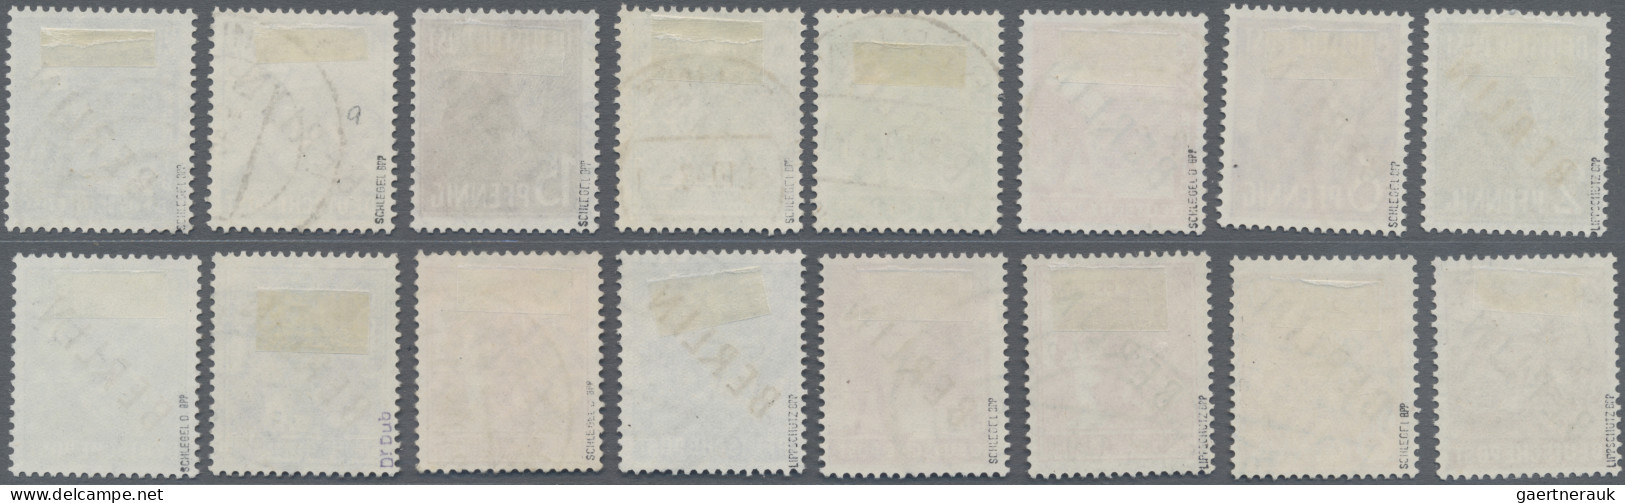 Berlin: 1948, Schwarzaufdruck, Kompletter Satz Sauber Gestempelt, 2 Pfg.-84 Pfg. - Used Stamps